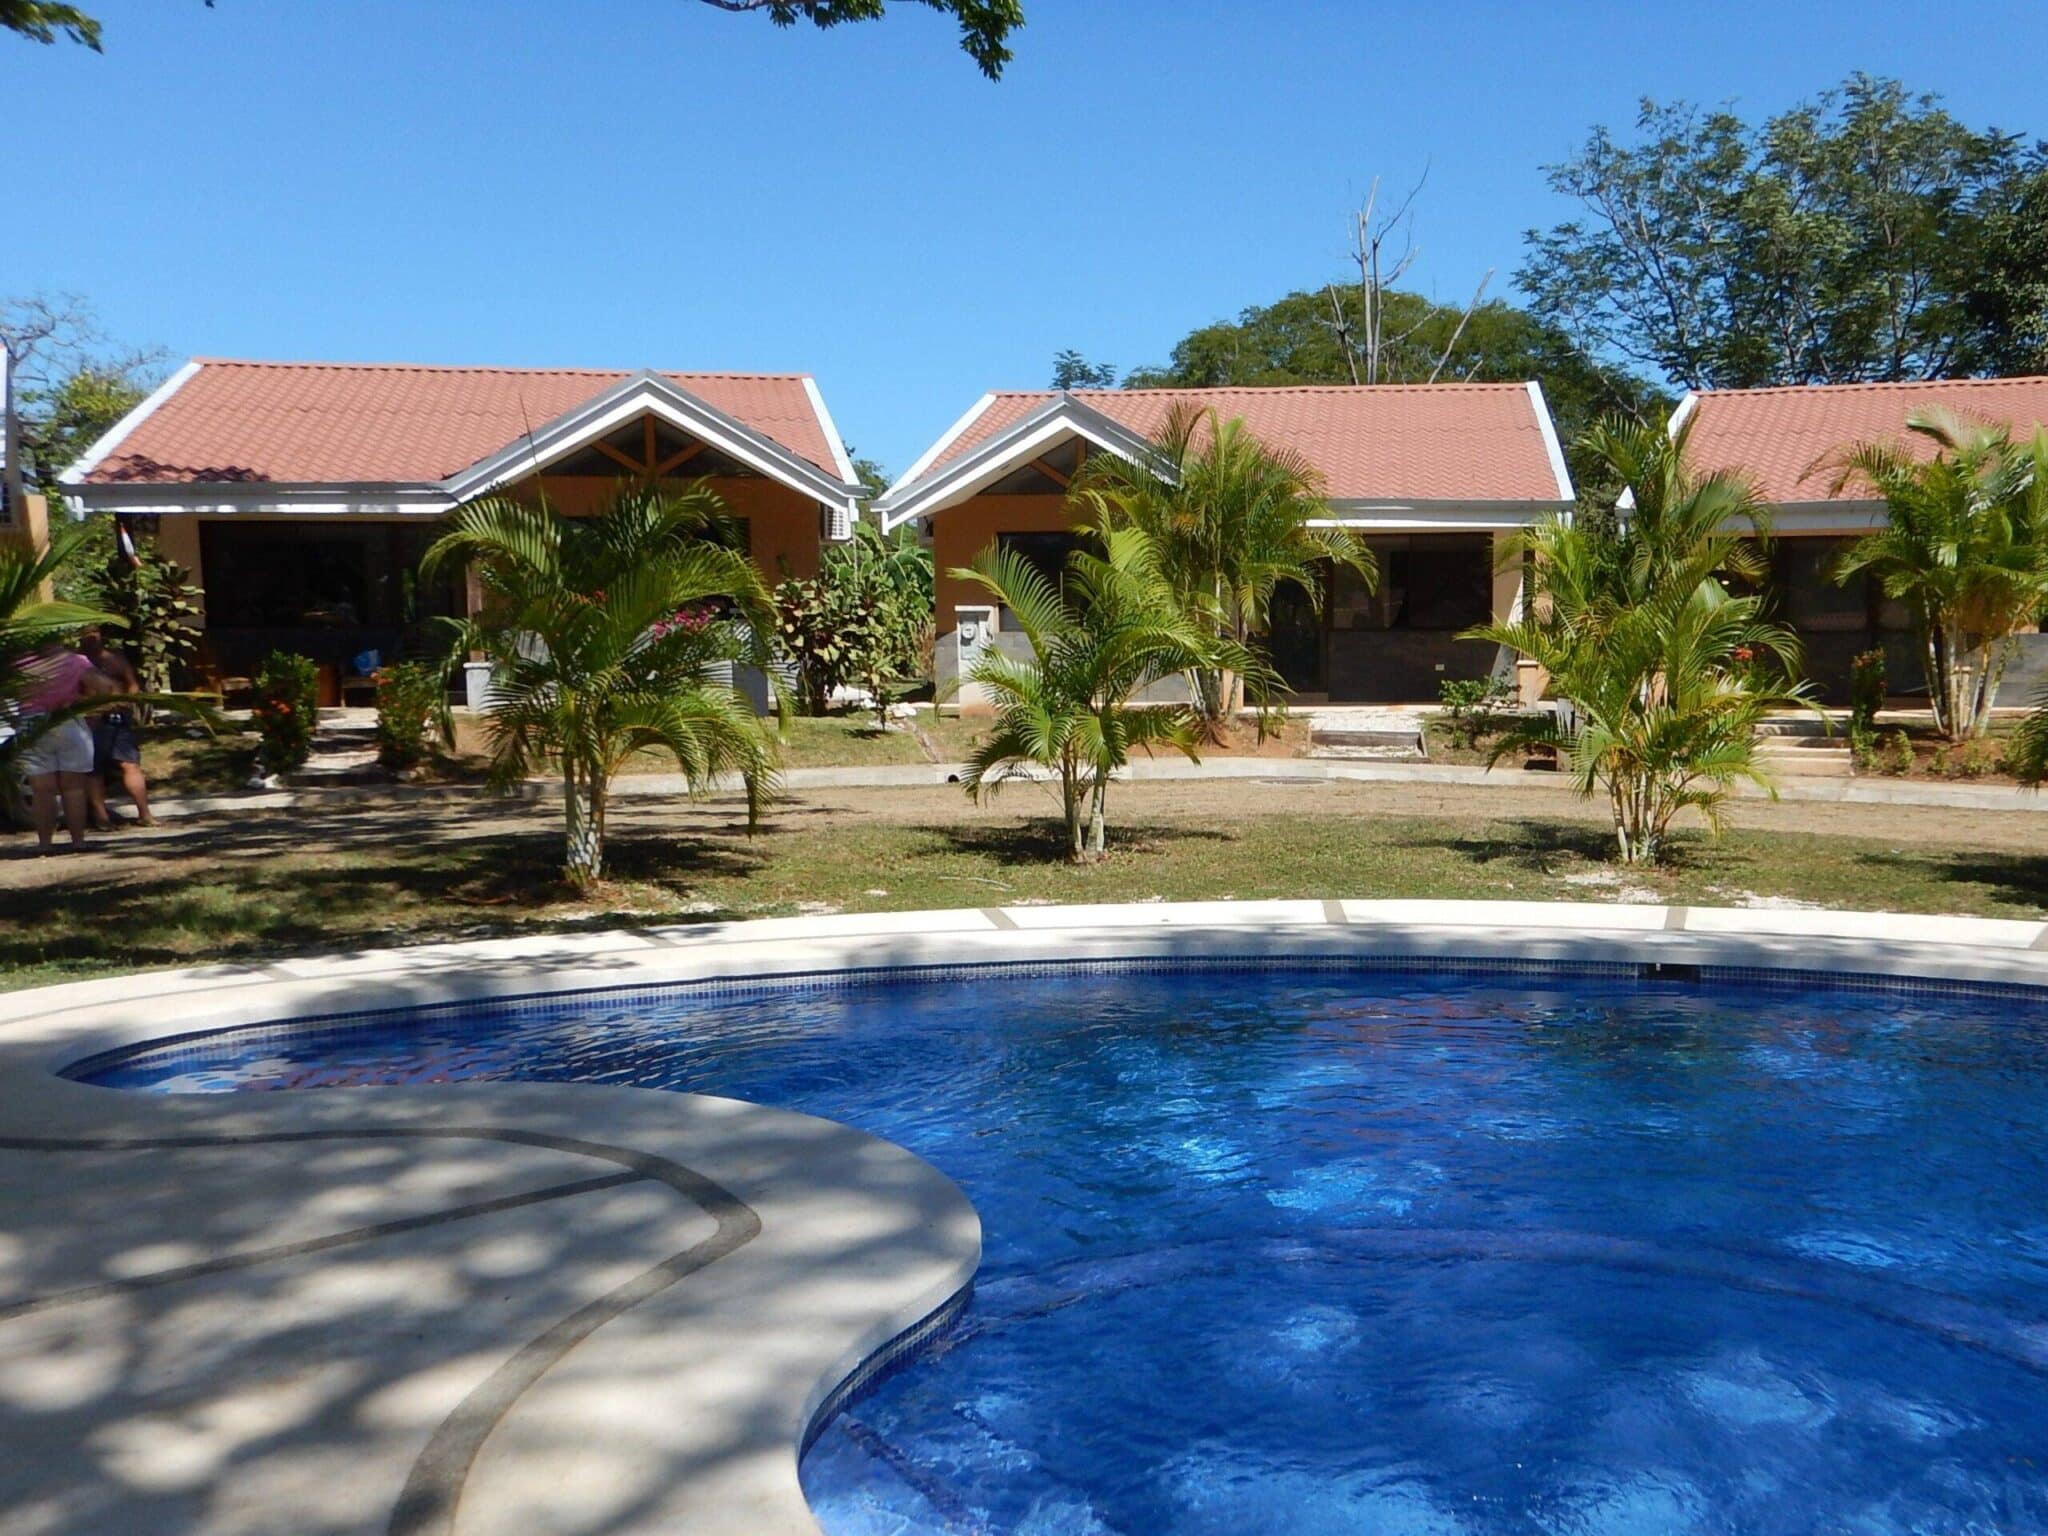 Villa Pura Vida- Modern Tropical Getaway Villa